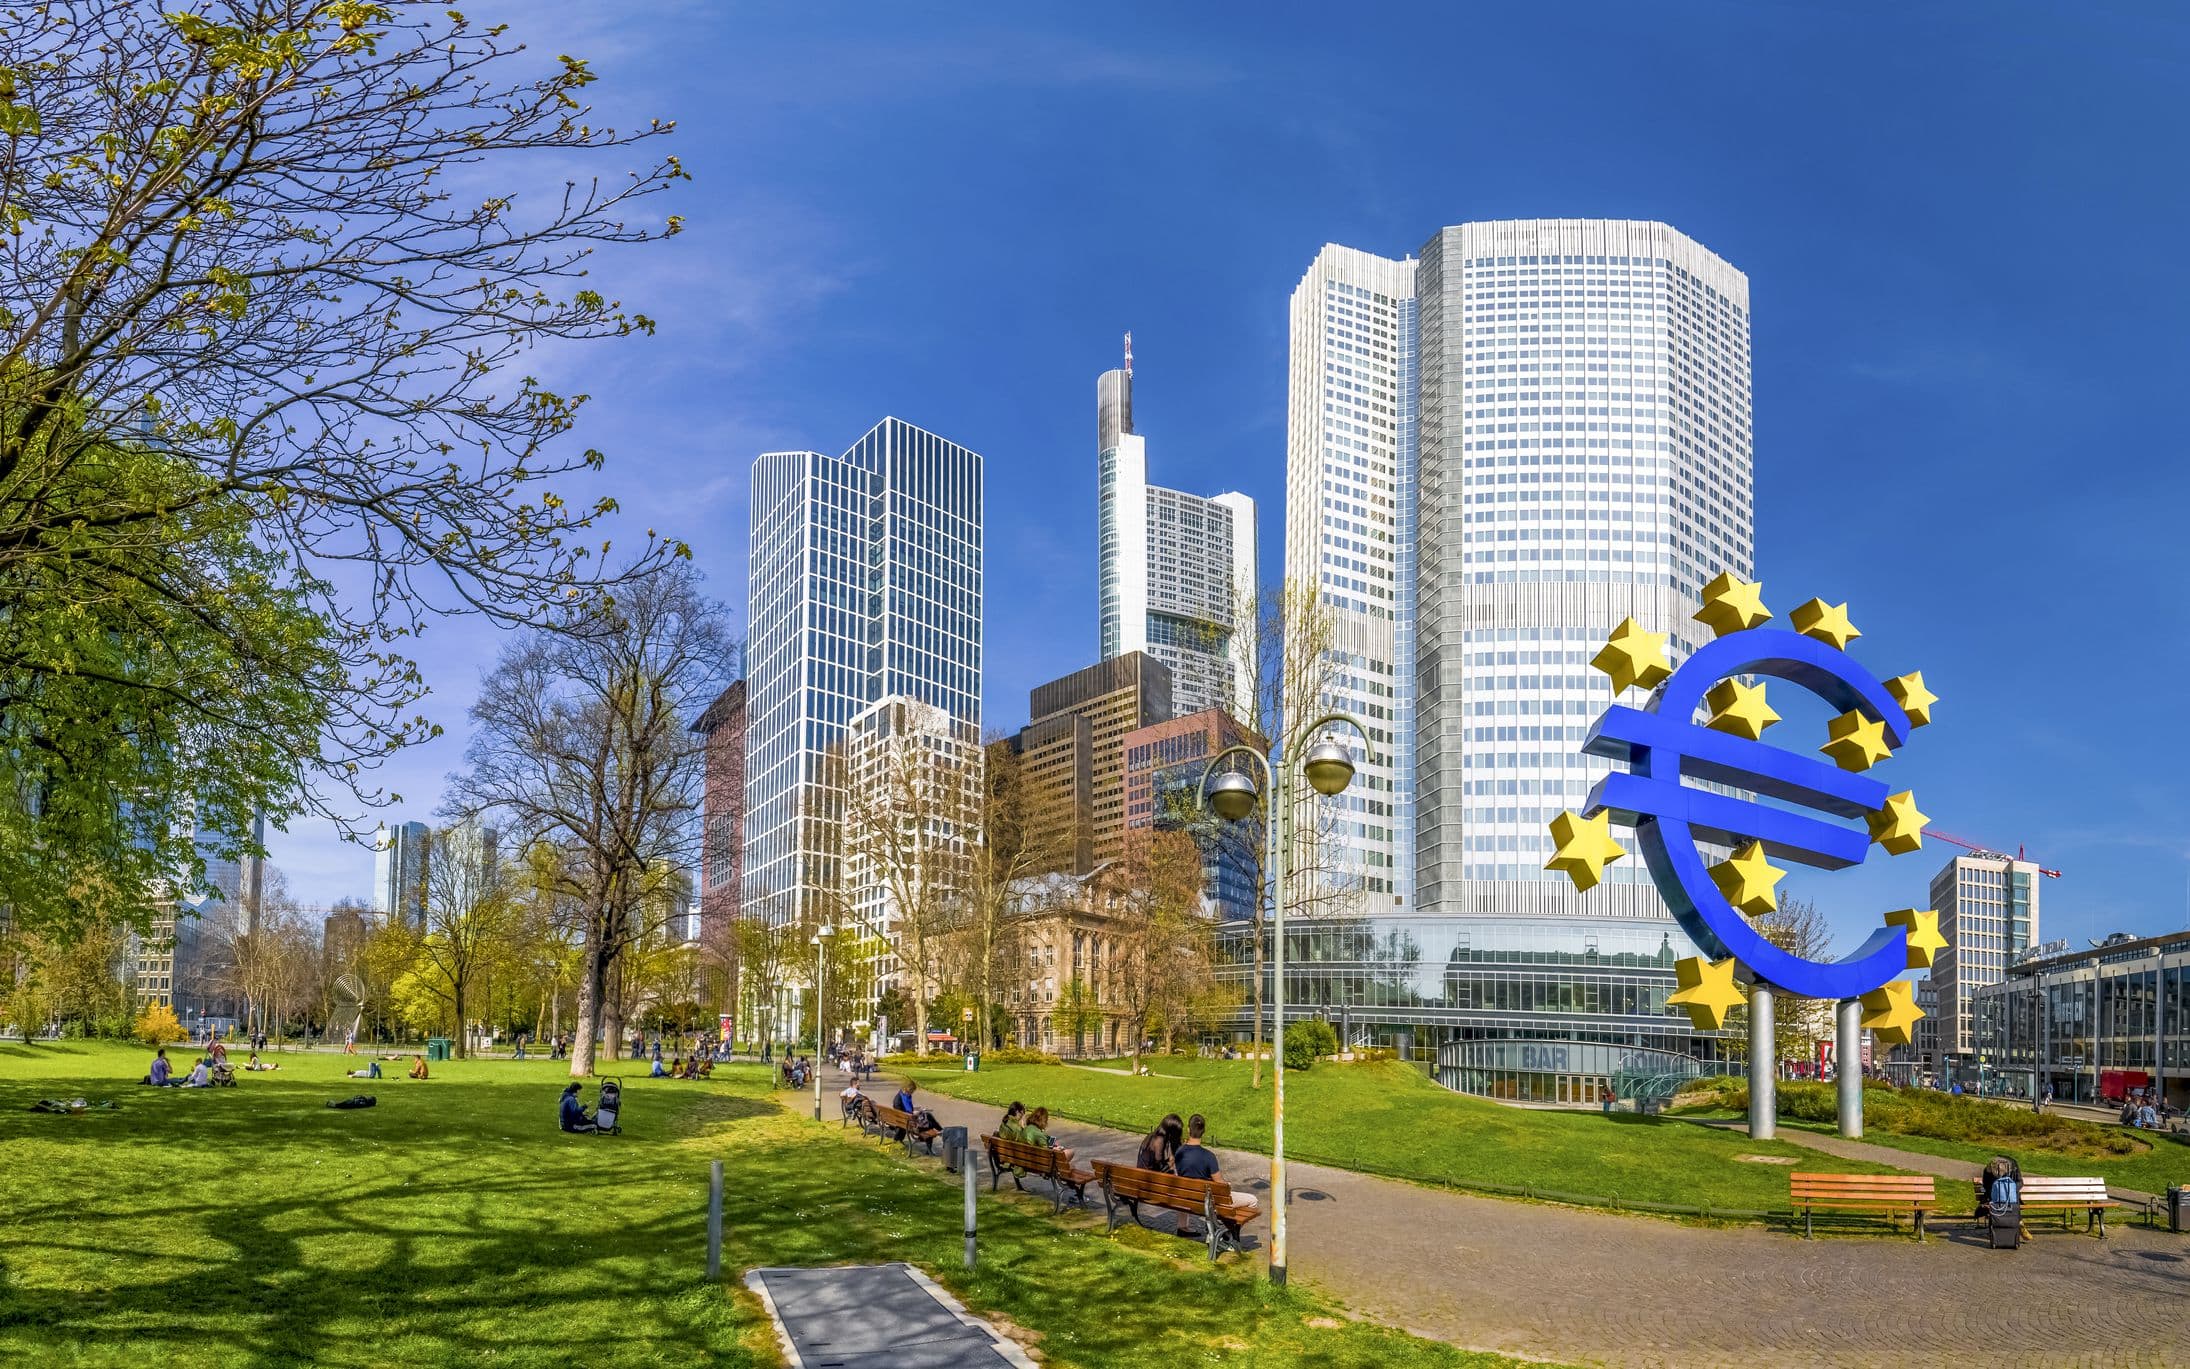 European central bank. Центральный банк европейского Союза. Центральный банк Европы во Франкфурте. Фото европейского центрального банка. Центральные банки Европы.